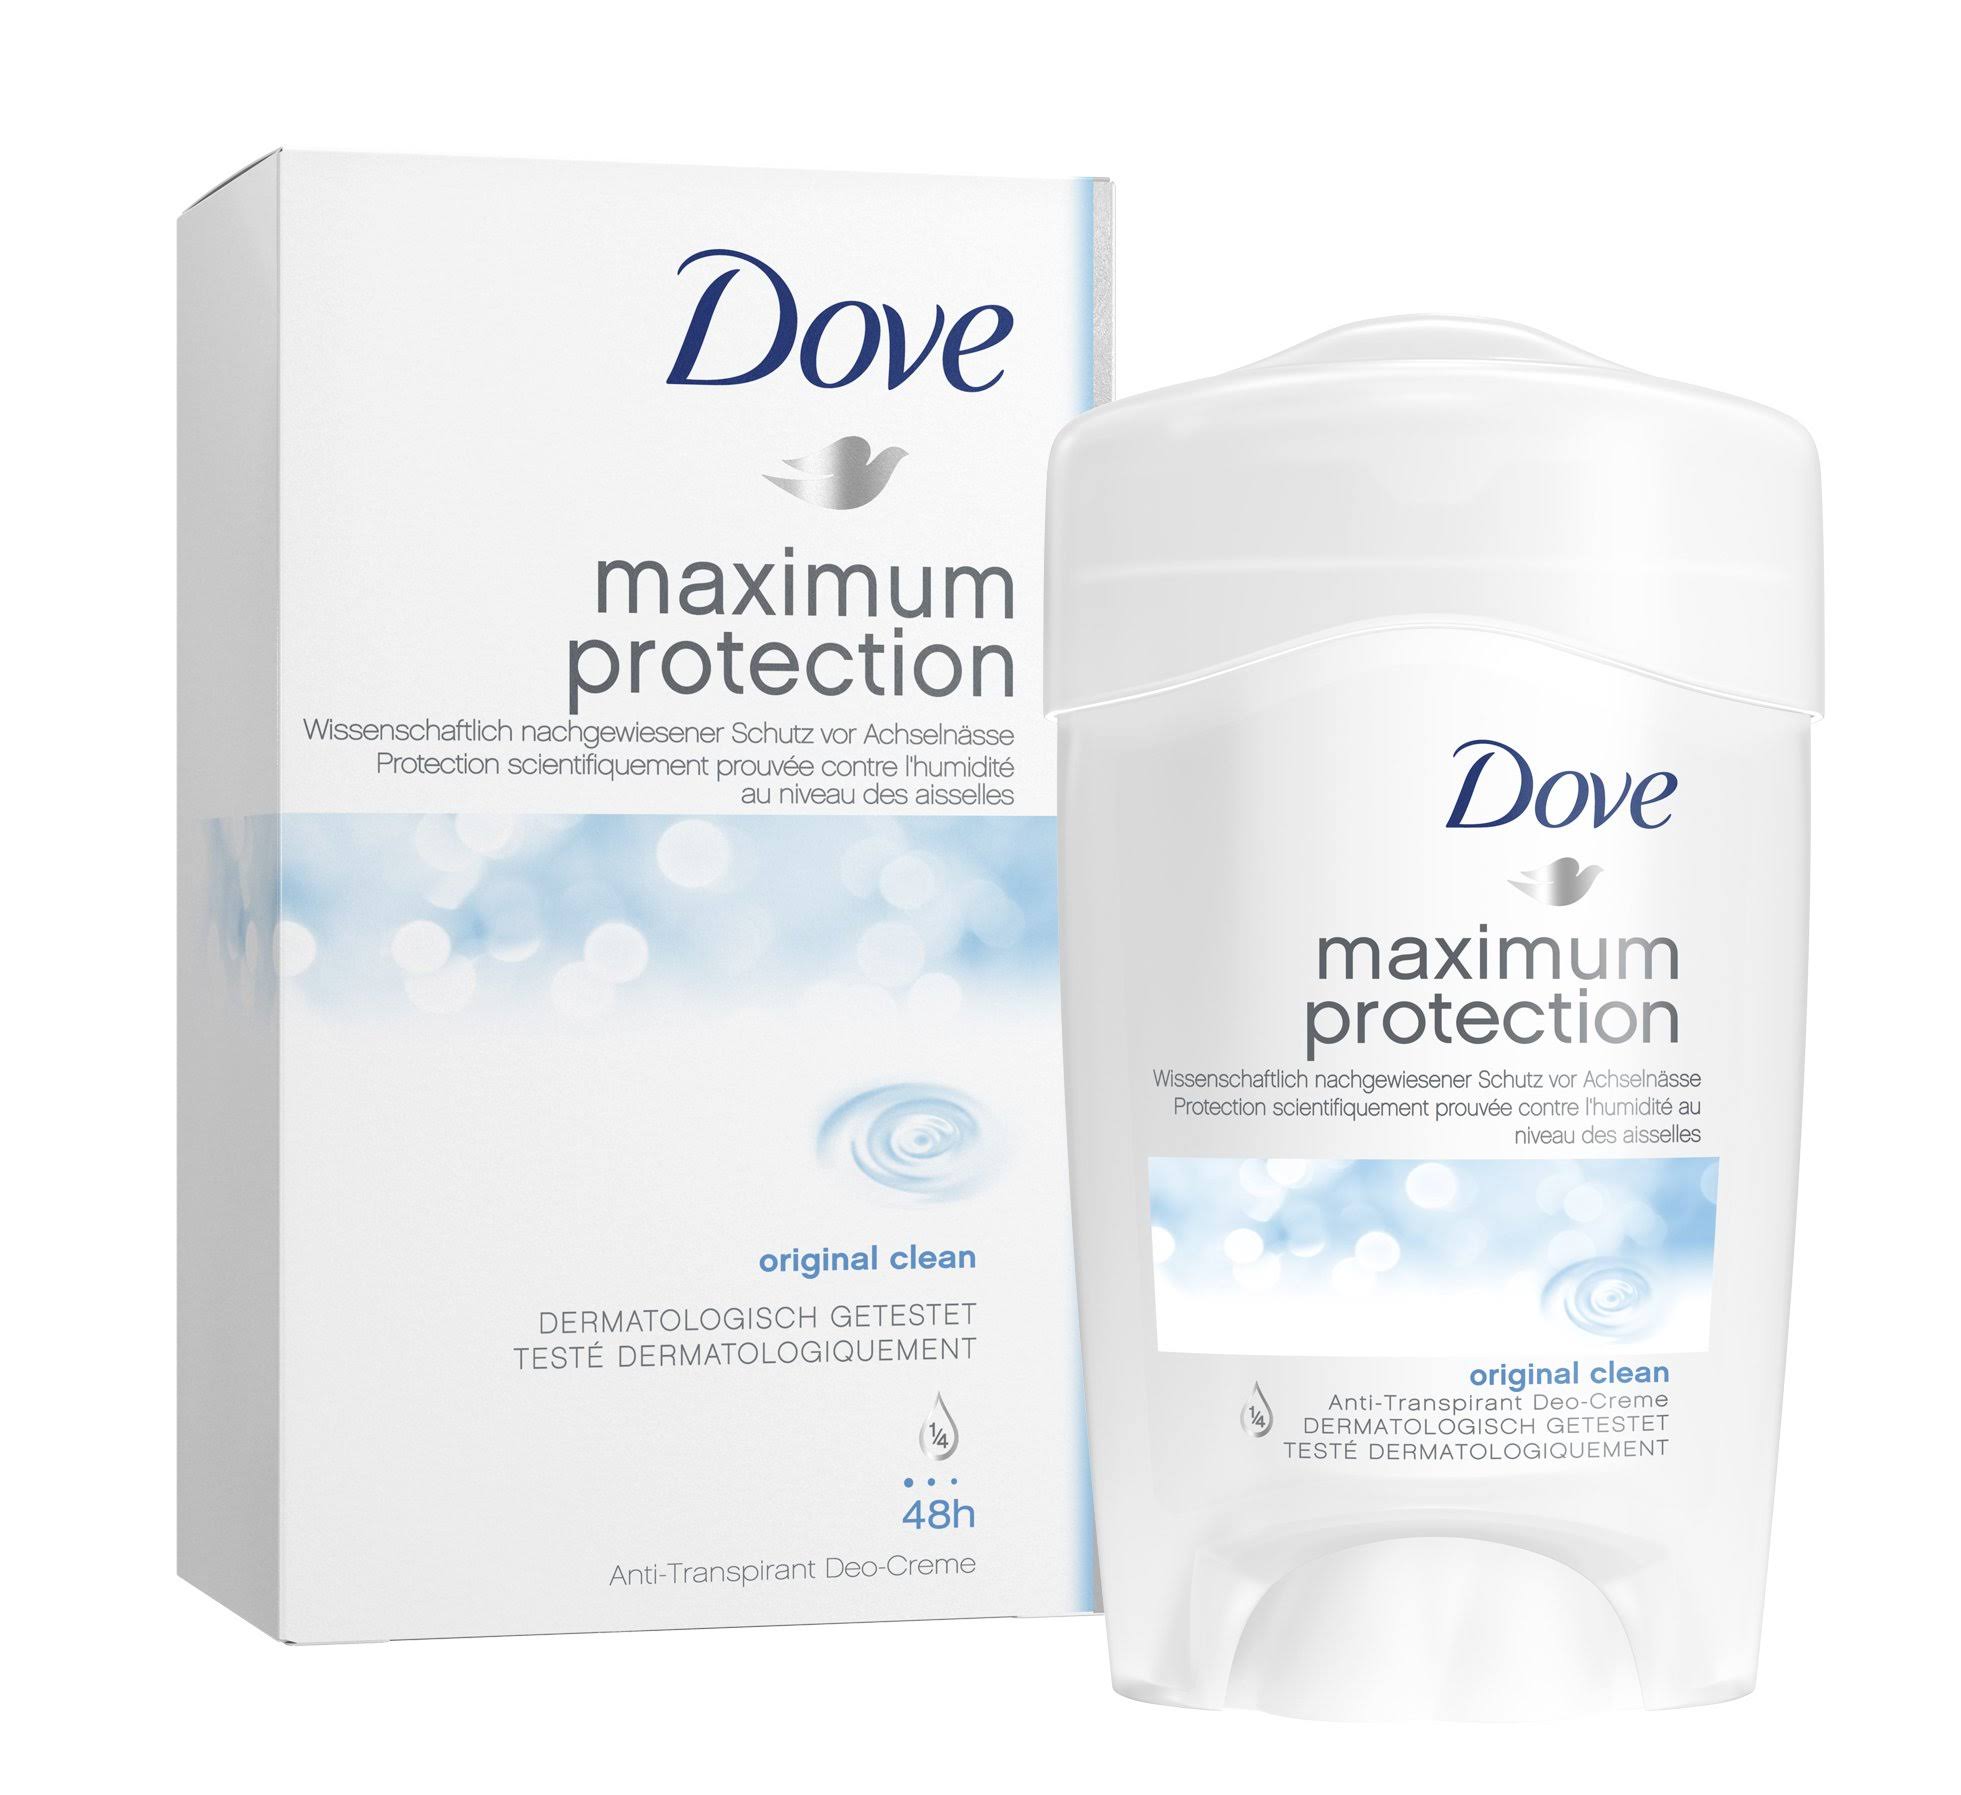 Dove Maximum Protection Cream Antiperspirant Deodorant - Original Clean, 45ml